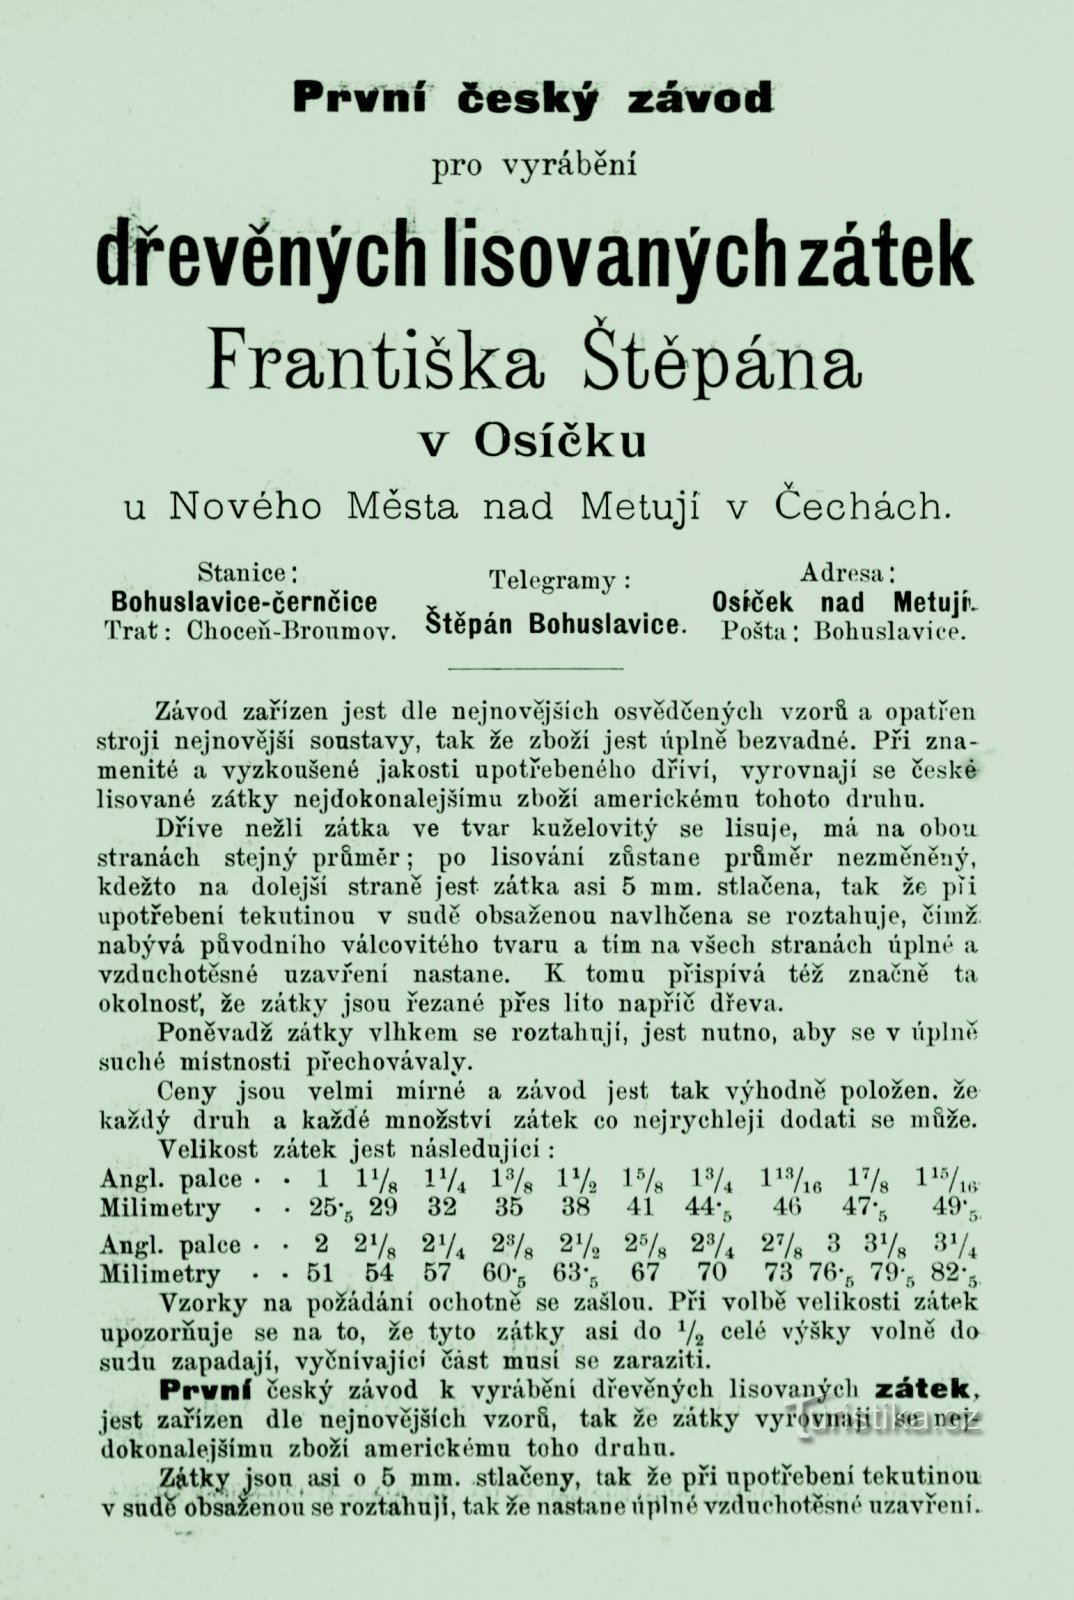 Epokowa reklama młynarza Františka Štěpána z 1893 r.